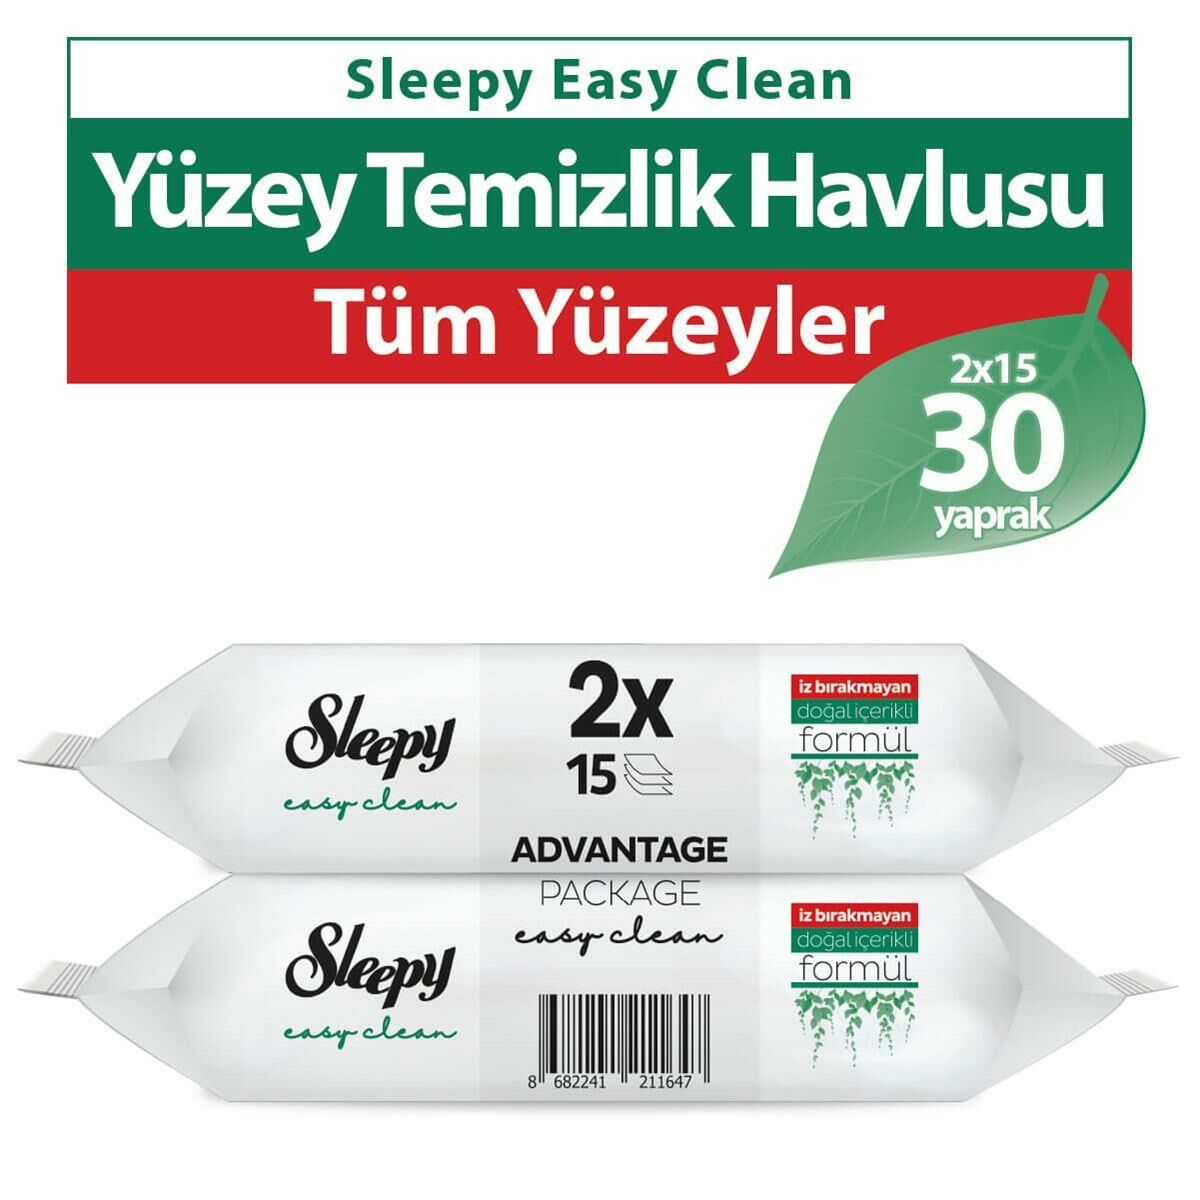 Sleepy Easy Clean Yüzey Temizlik Havlusu 2x15 Yaprak (30 Yaprak)